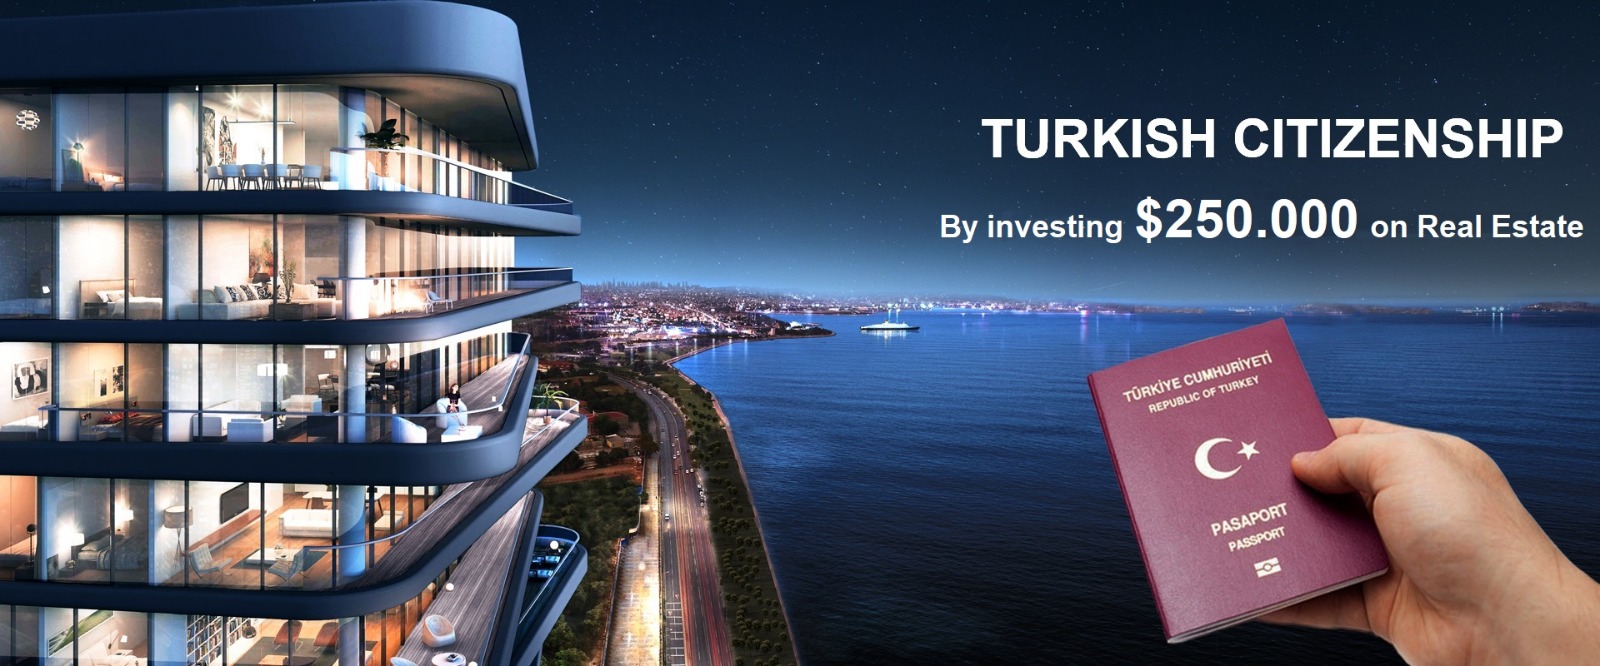 Turkish Citizenship in Turkey 2021: 5 Ways to Get It!